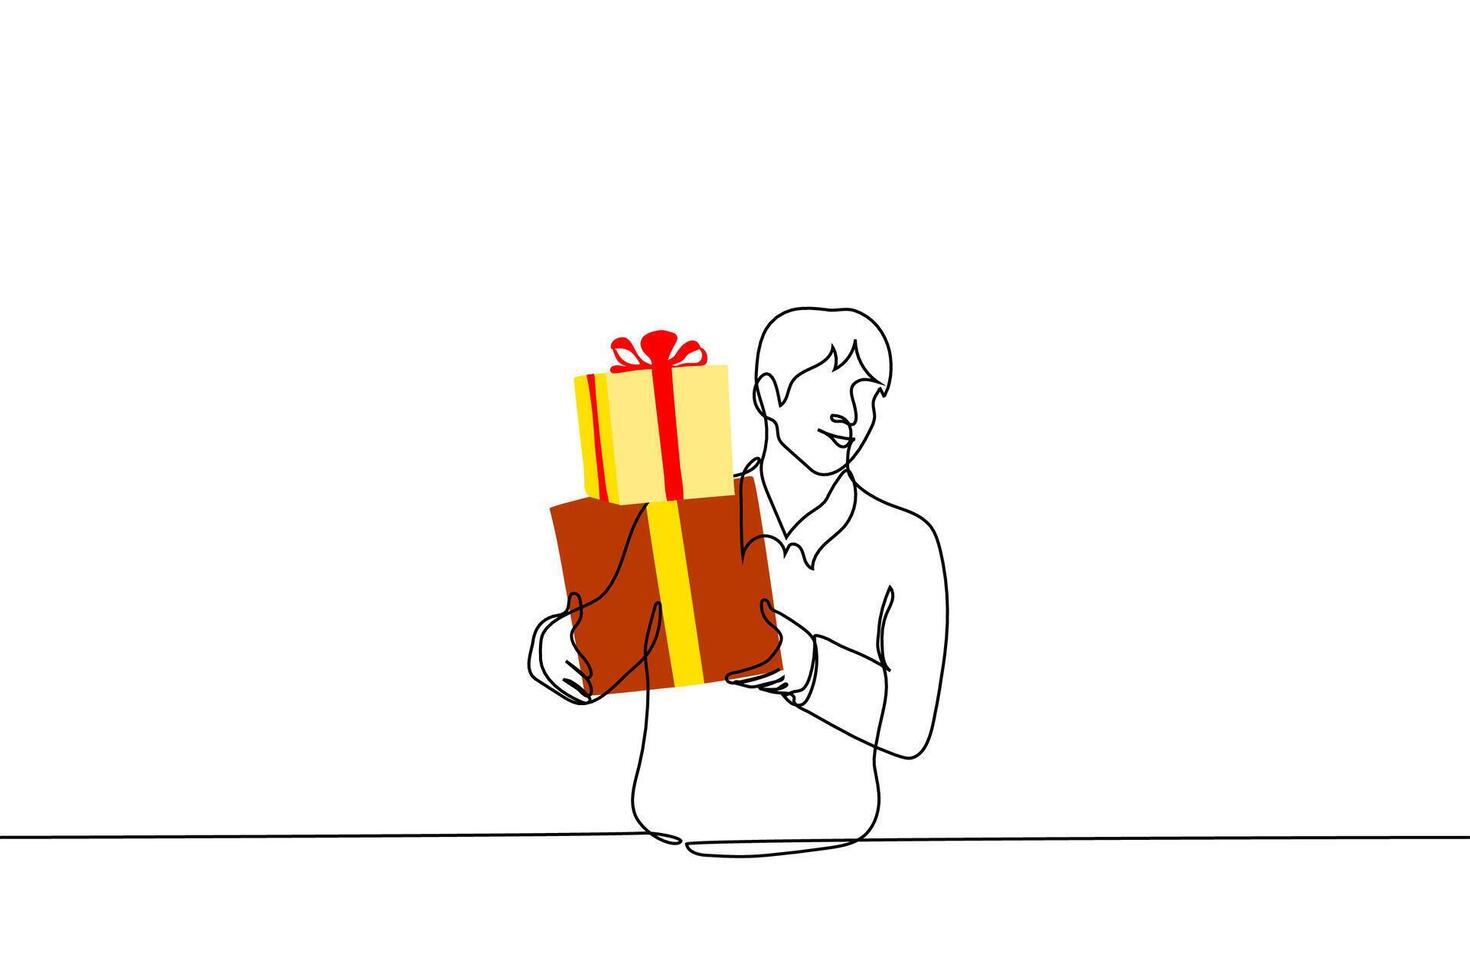 Mann lächelnd halten Geschenk Kisten gebunden mit Band - - einer Linie Zeichnung Vektor. Geschenk Verpackung Konzept, geben und Empfang Geschenke vektor